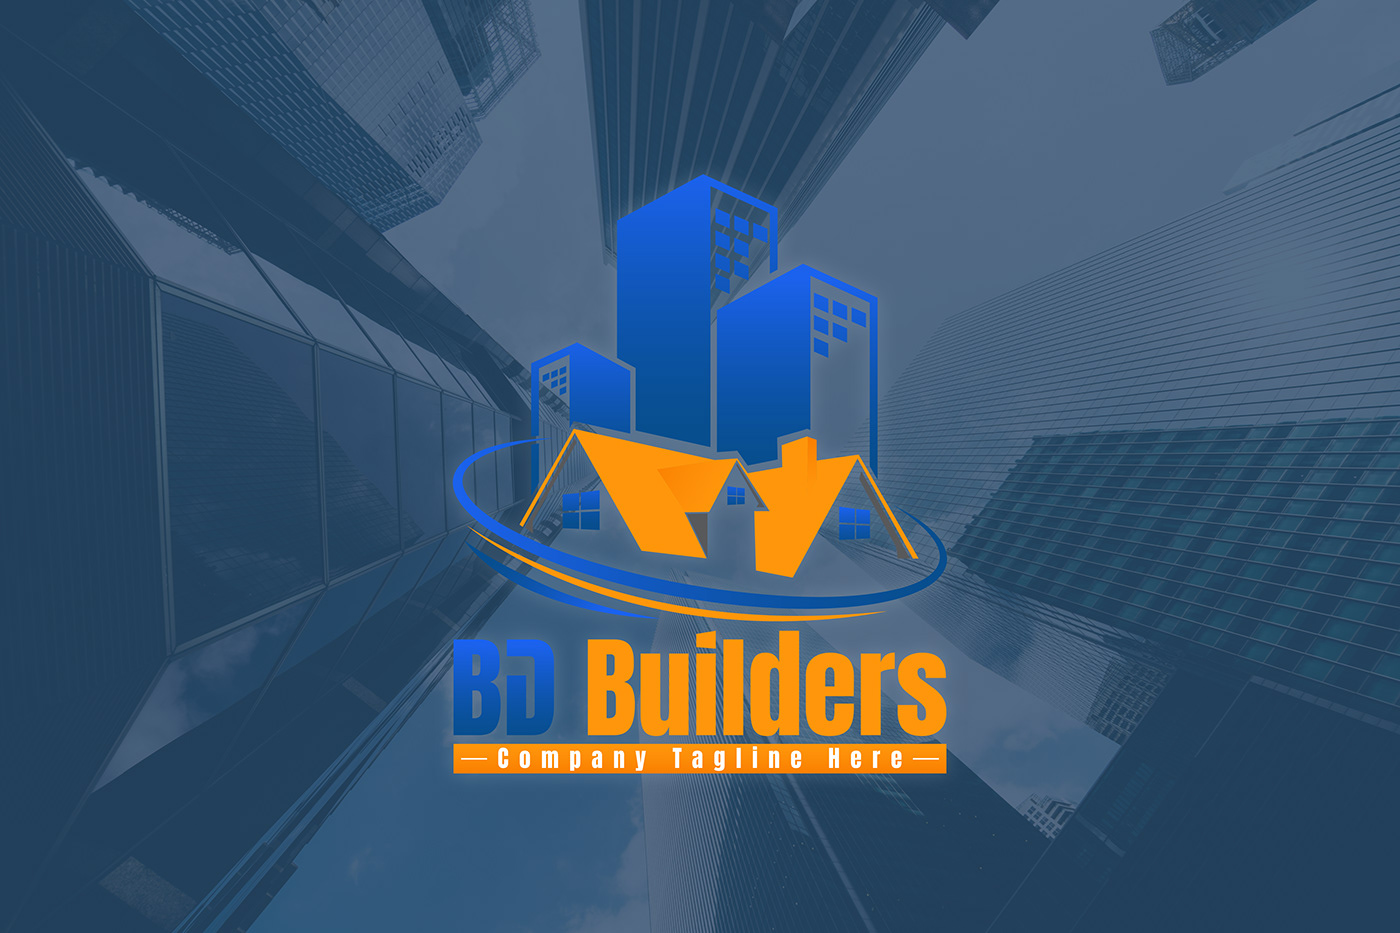 Logo Design building builders logo construction brand identity branding  Brand Design identity logos construccion